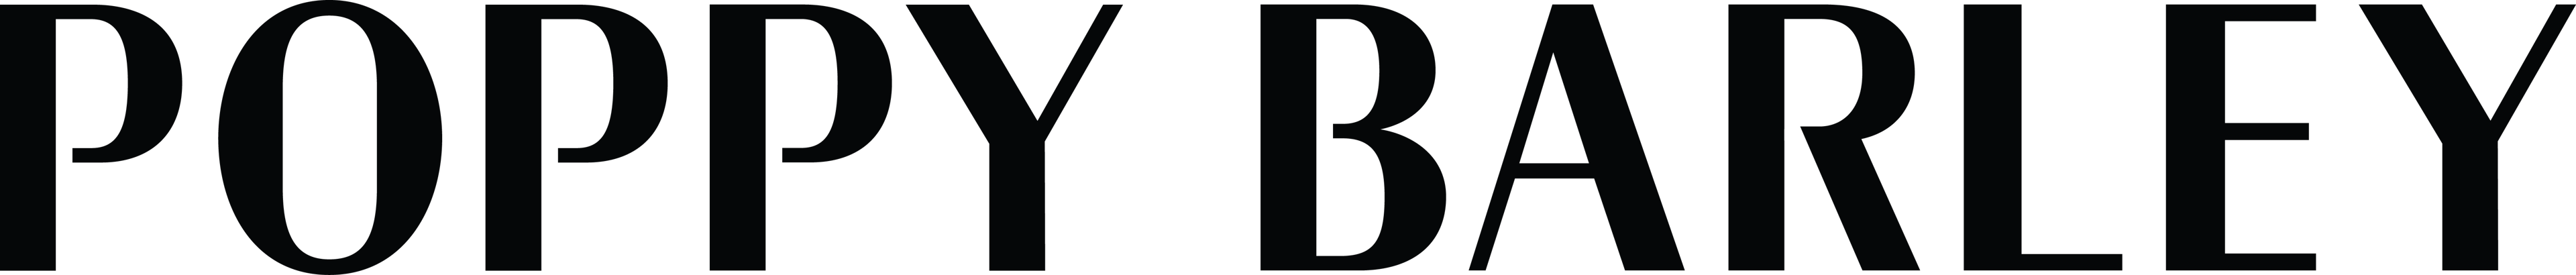 Poppy Barley logo